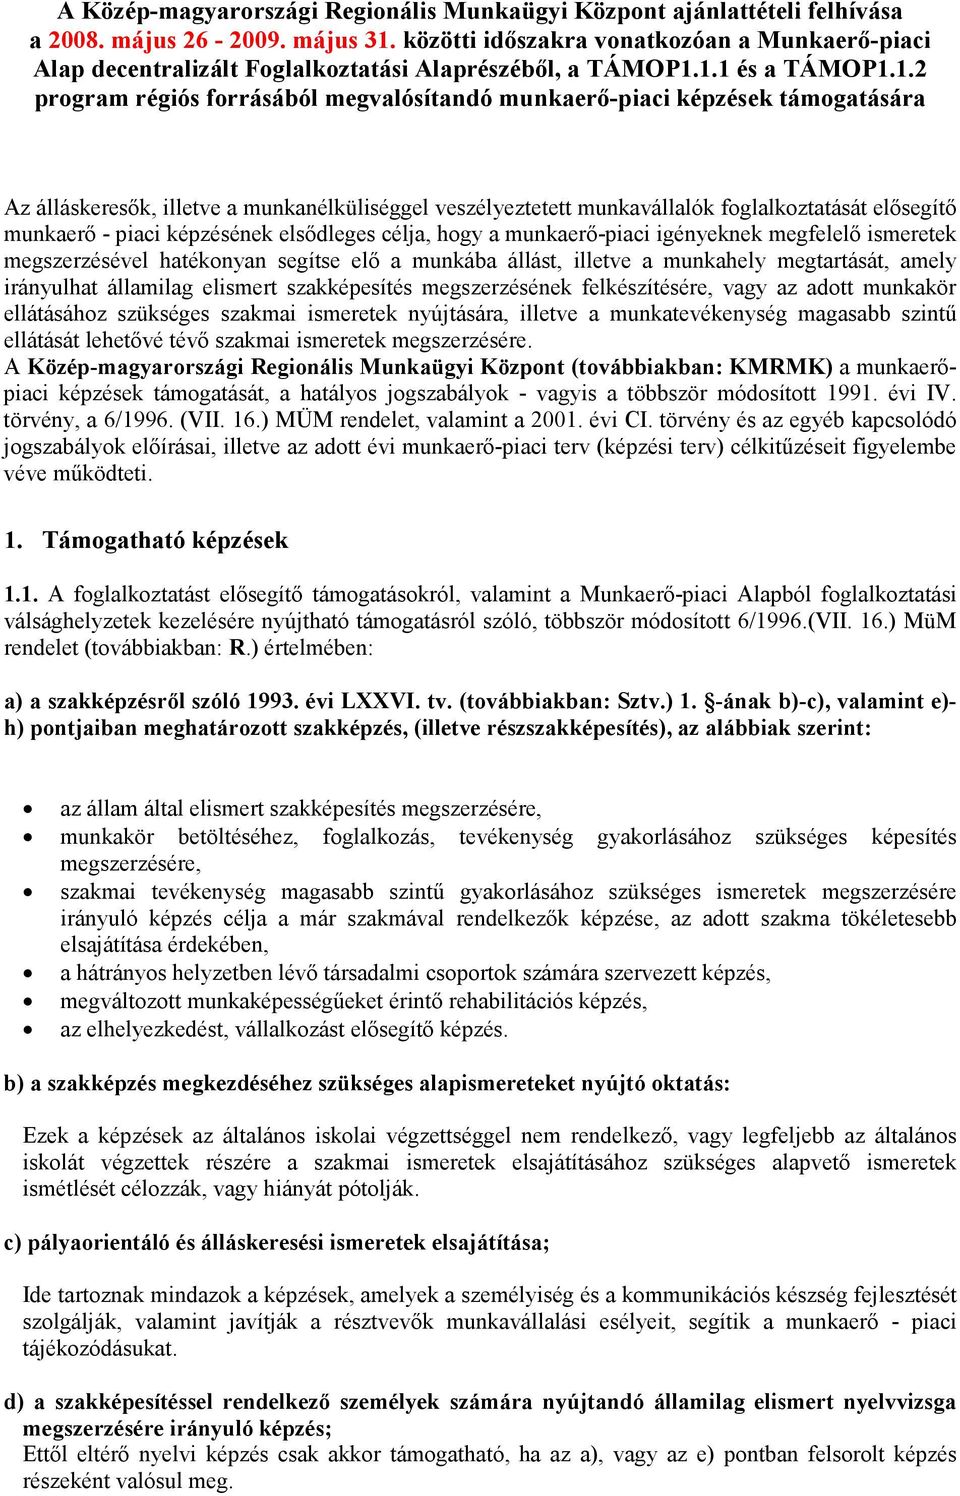 1.1 és a TÁMOP1.1.2 program régiós forrásából megvalósítandó munkaerı-piaci képzések támogatására Az álláskeresık, illetve a munkanélküliséggel veszélyeztetett munkavállalók foglalkoztatását